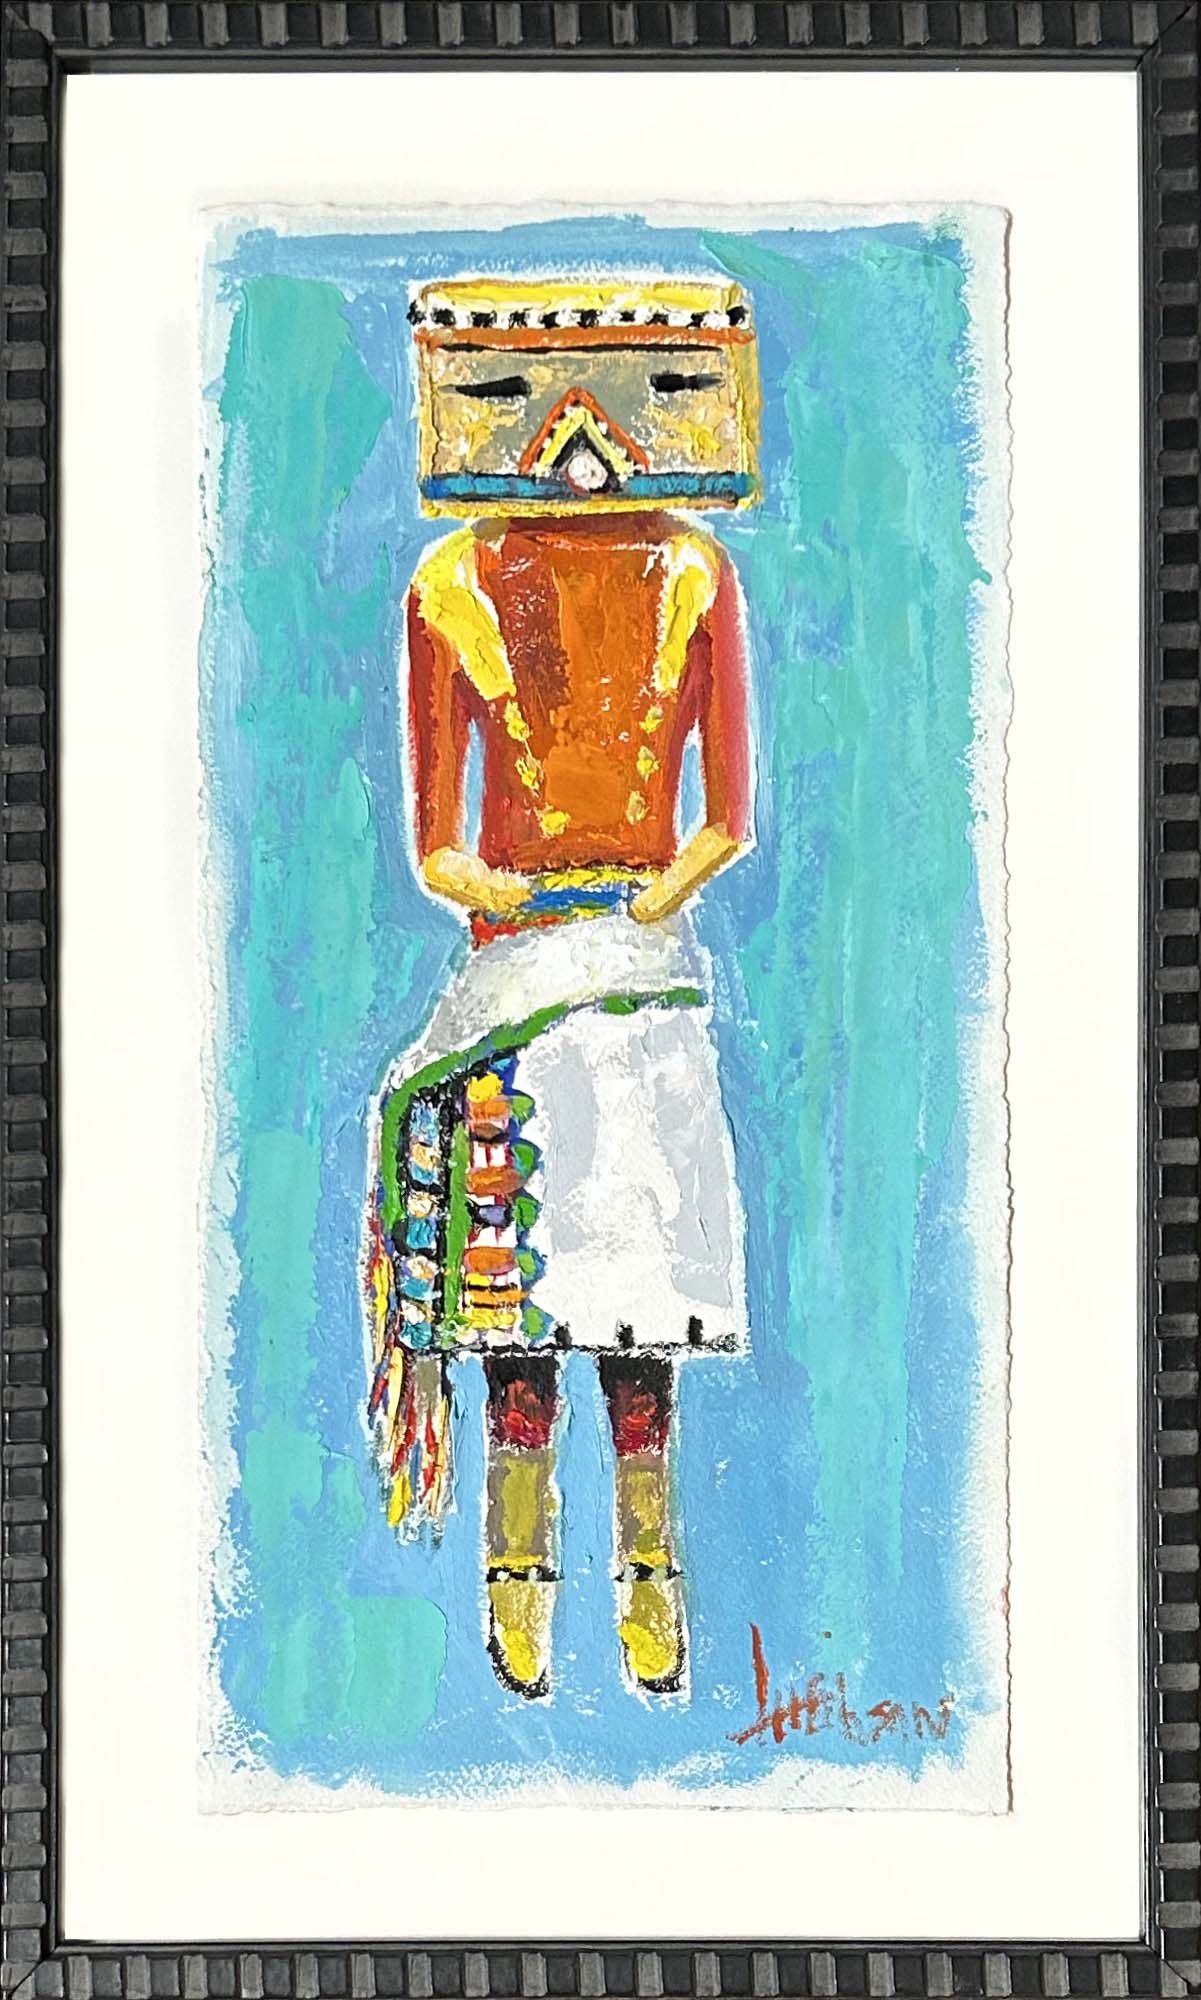 Kachina Doll with Colorful Sash